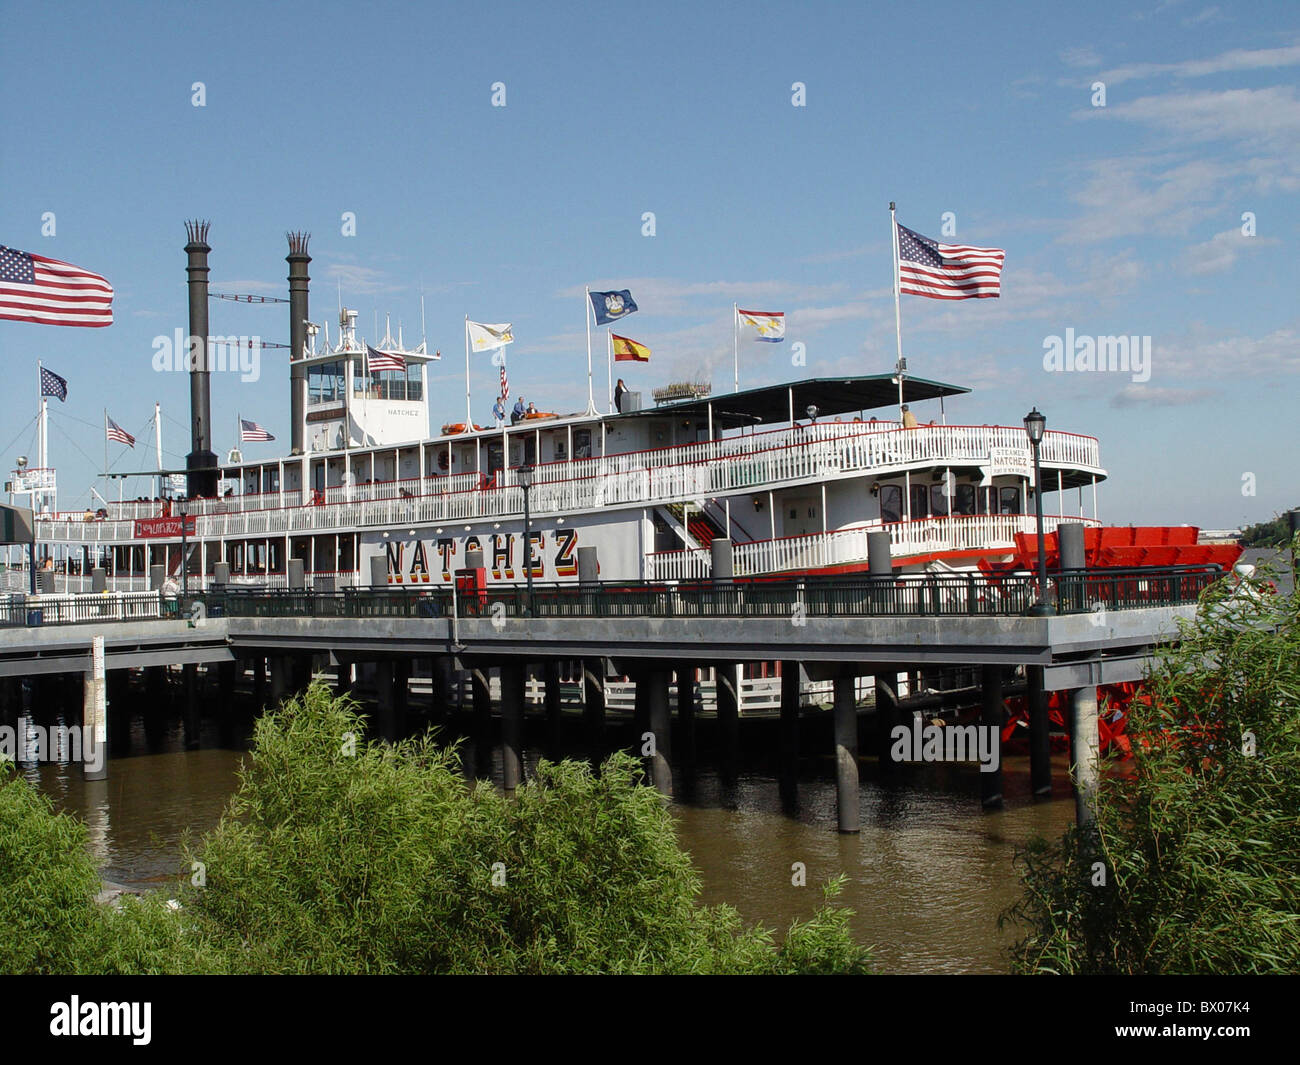 Dampfer Fluss Fluss historische Natchez New Orleans in Louisiana Mississippi Nostalgie Schaufel Rad steamboat Stockfoto